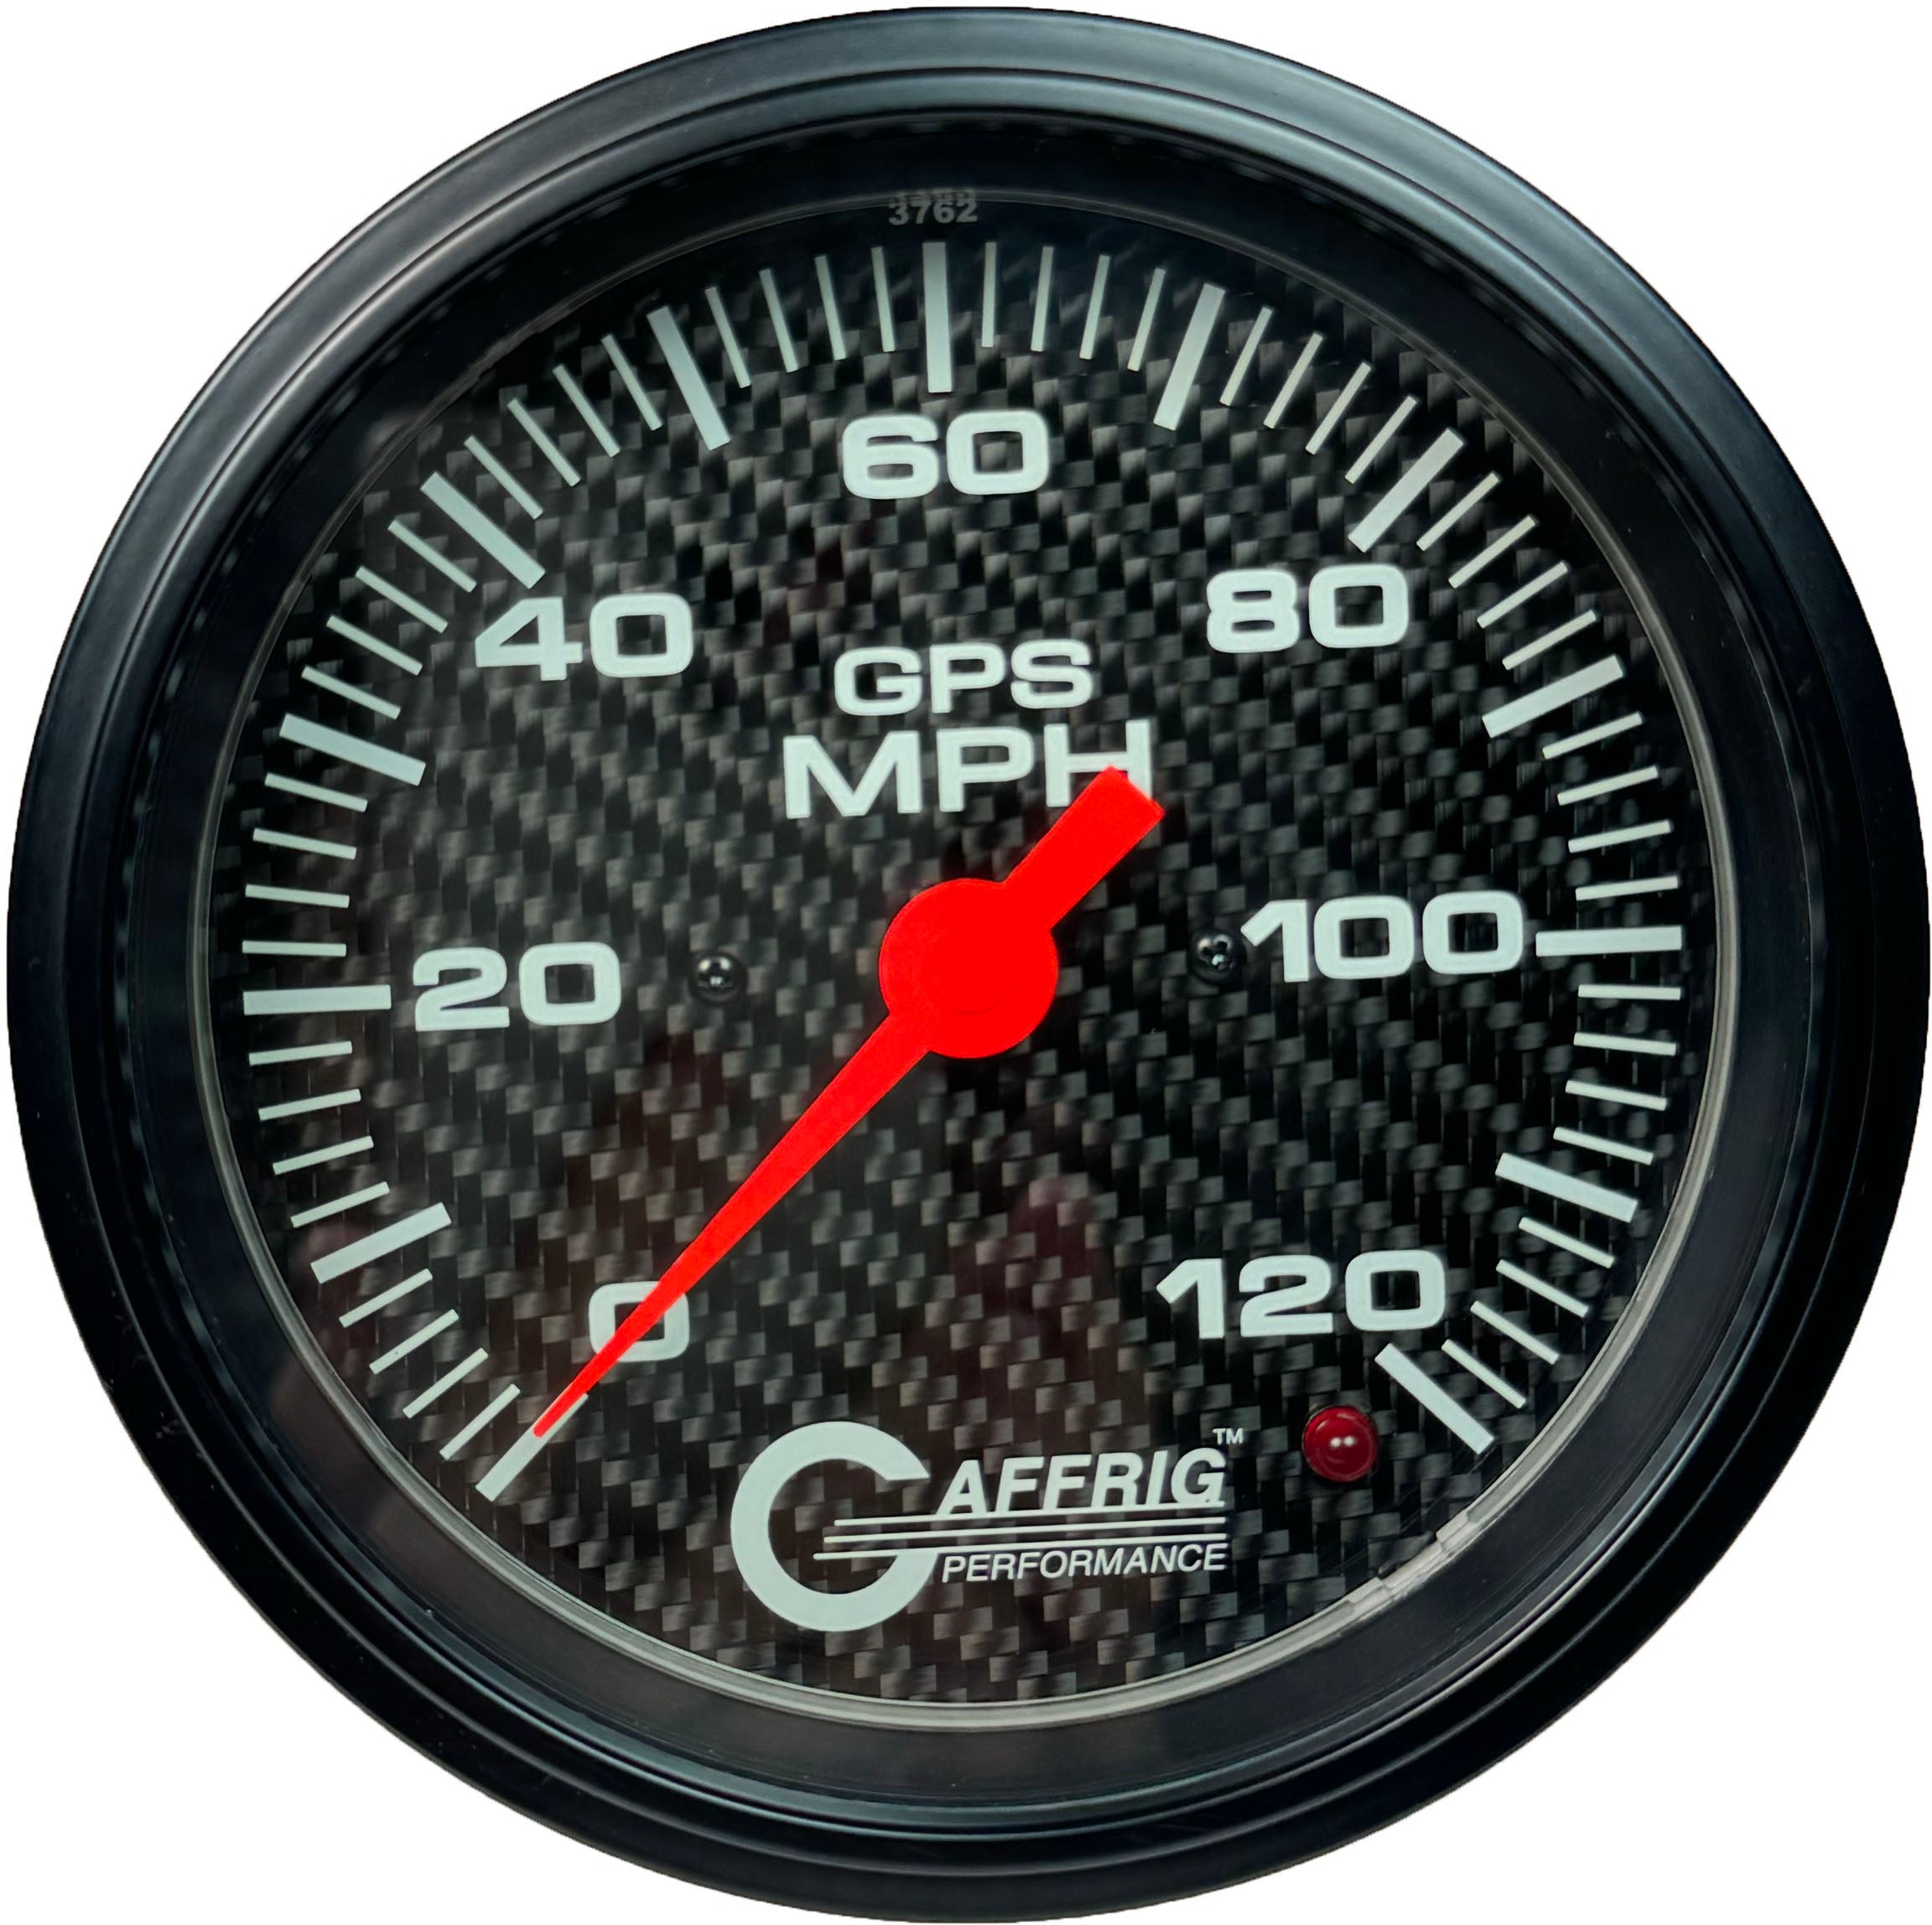 GAFFRIG PART #4050 4 5/8 INCH GPS ANALOG 120 MPH SPEEDOMETER GAUGE KIT CARBON FIBER NO FAT RIM (STANDARD)